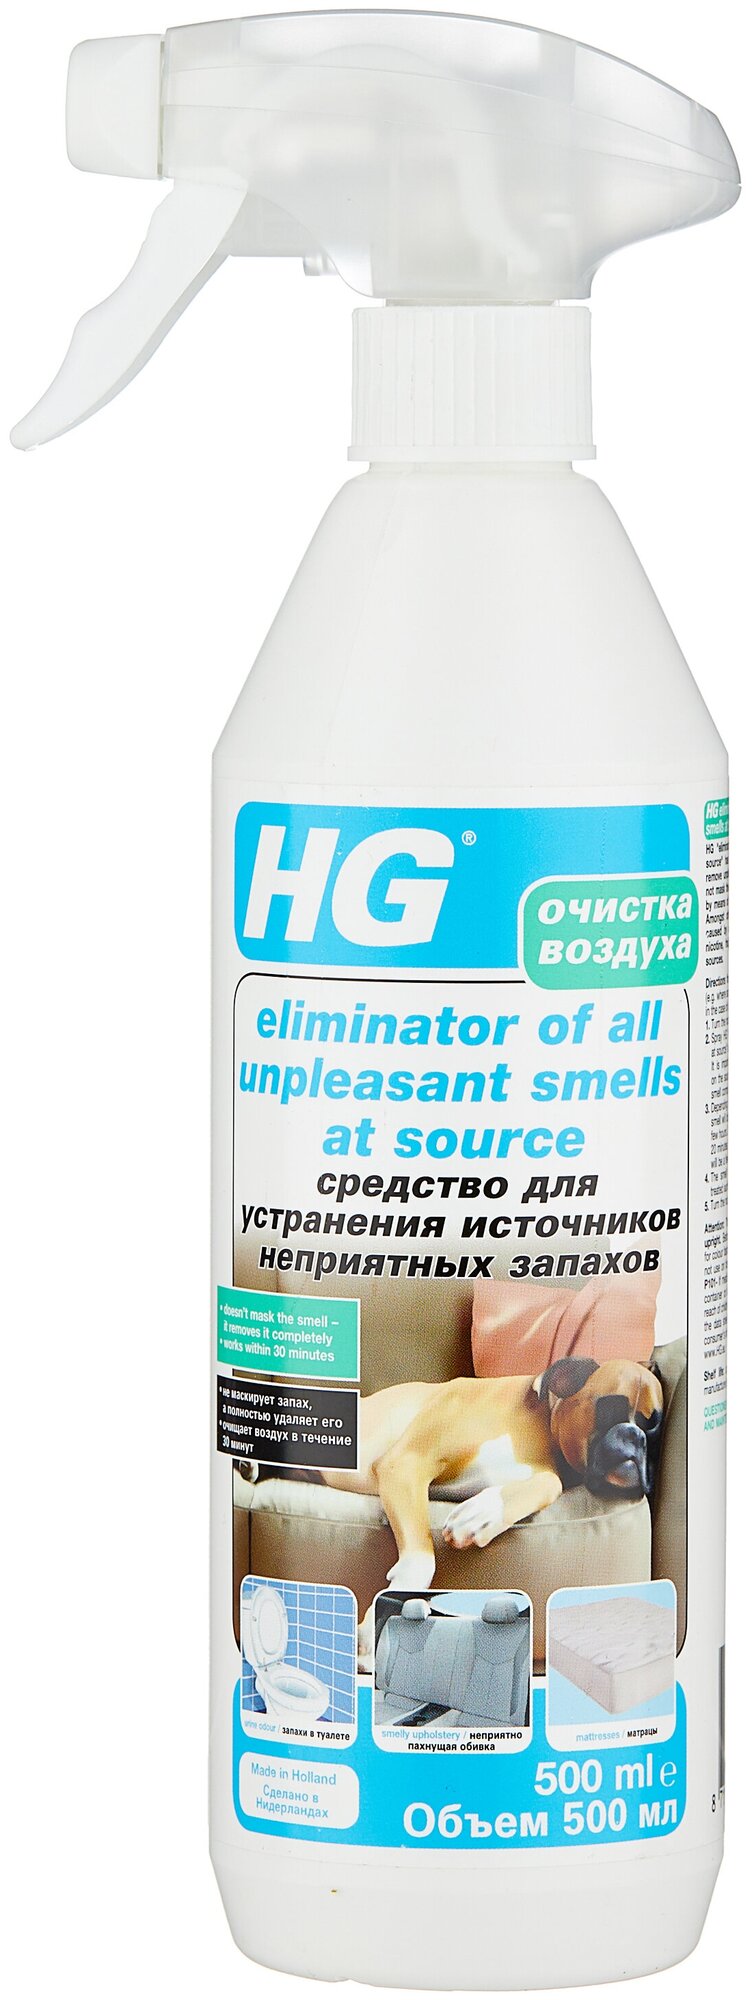 Средство для устранения источников неприятного запаха HG 0,5л